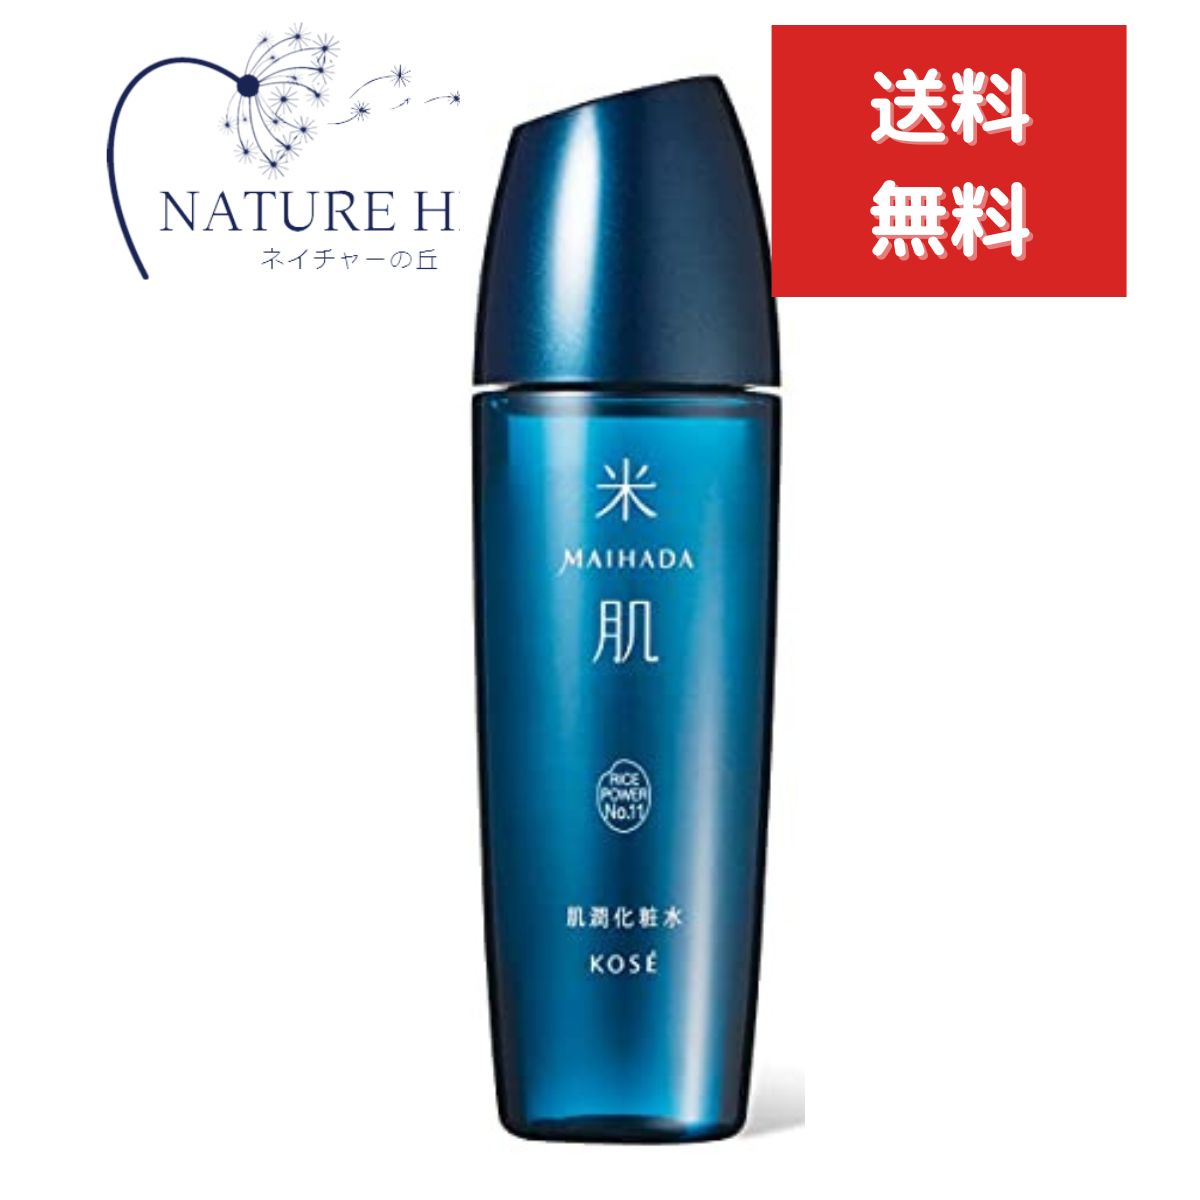 米肌 化粧水 コーセー 米肌(MAIHADA) 肌潤 肌潤化粧水 120mL 化粧水 Kose